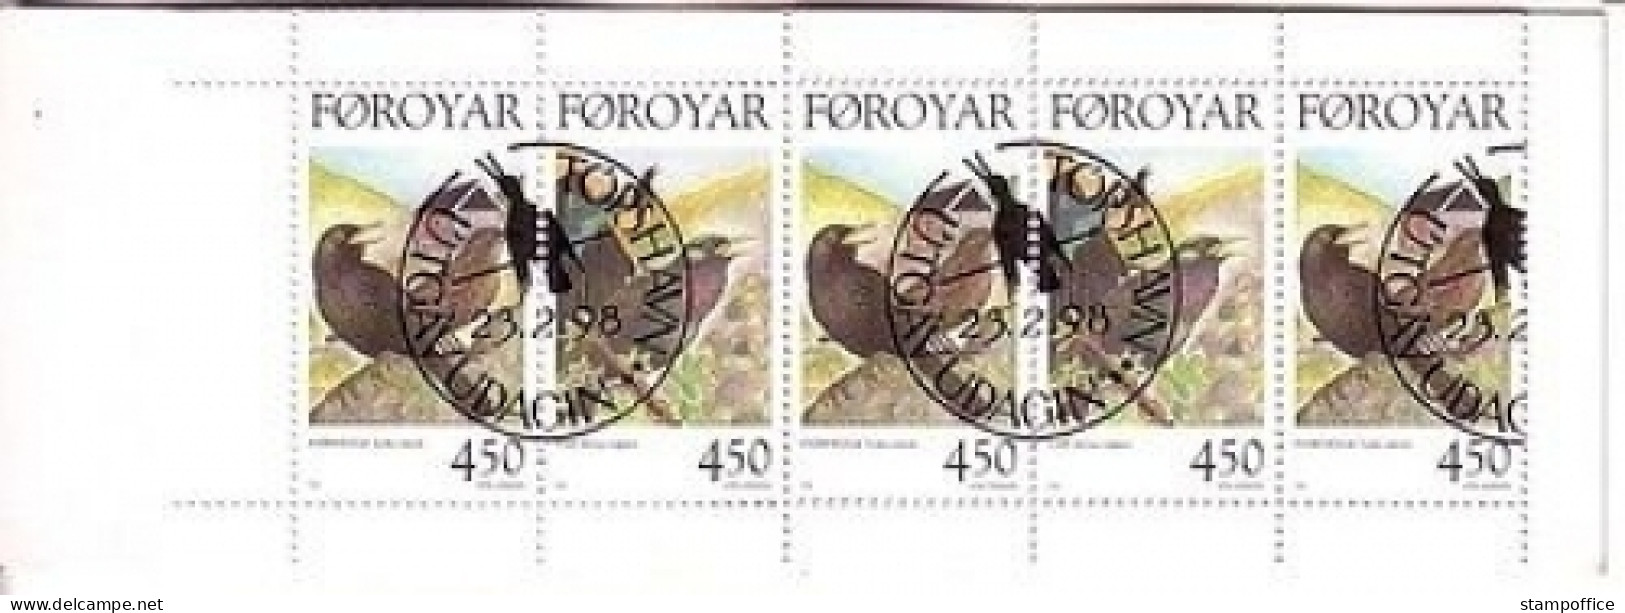 FÄRÖER MH 15 GESTEMPELT(USED) STANDVÖGEL (I) 1998 - Färöer Inseln